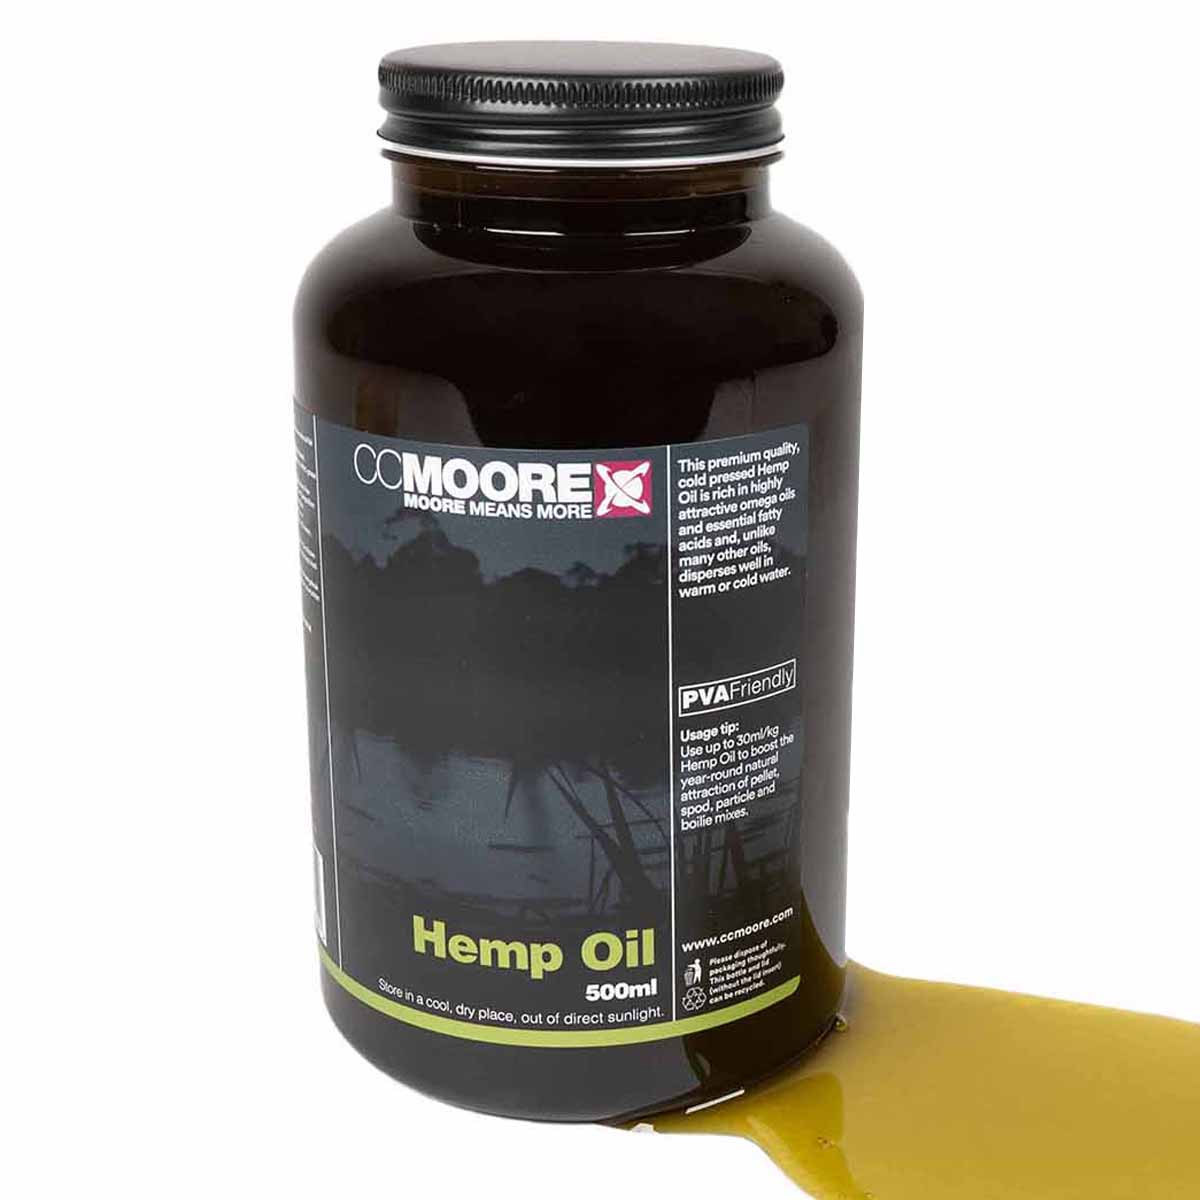 Cc Moore Hemp Oil 500ml